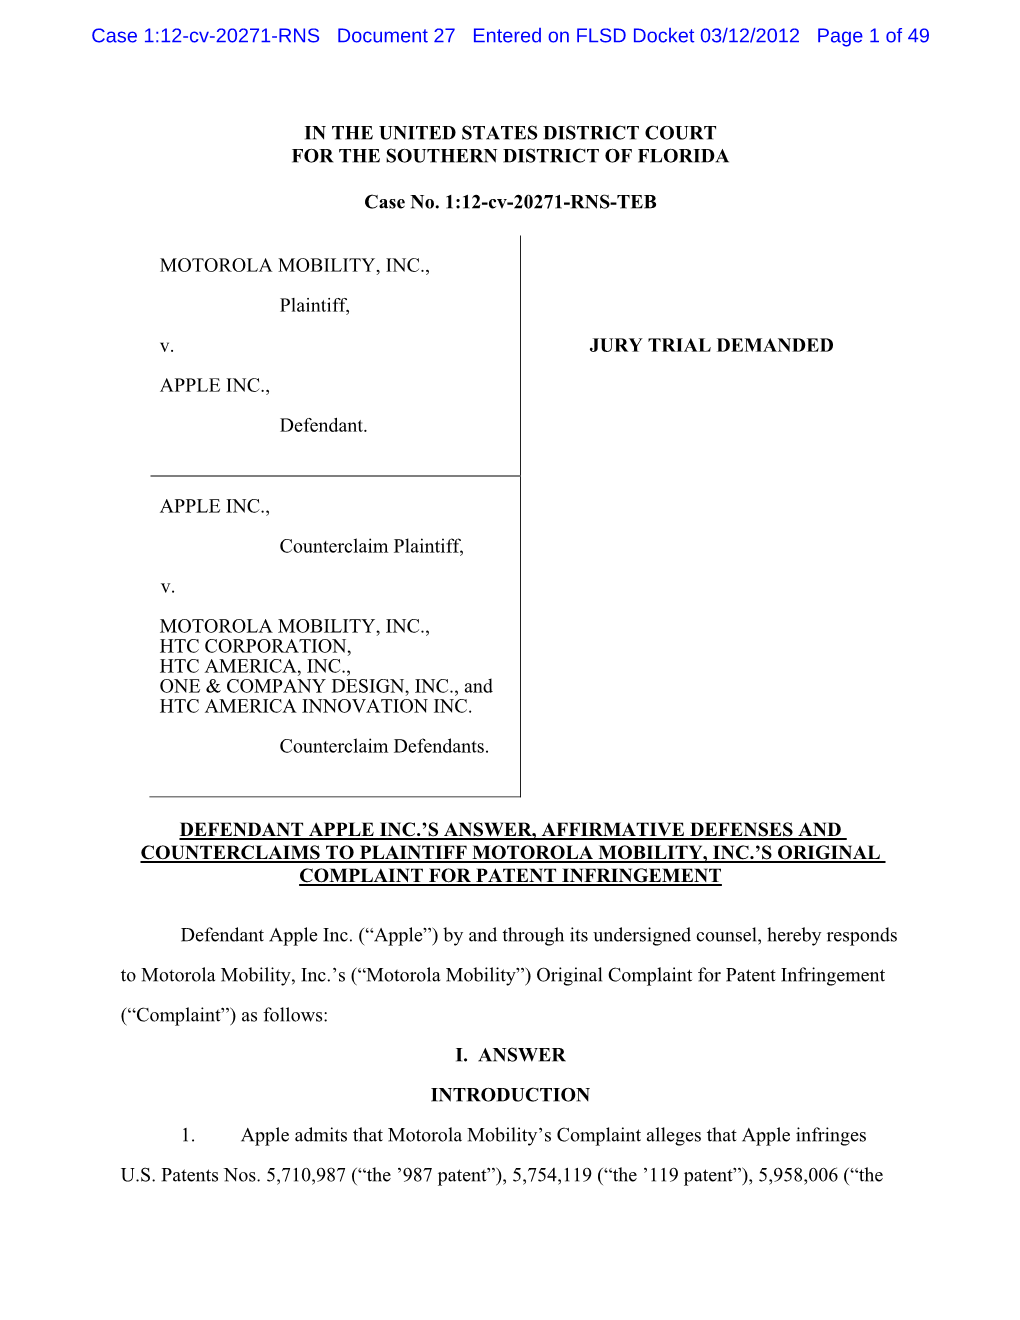 Case 1:12-Cv-20271-RNS Document 27 Entered on FLSD Docket 03/12/2012 Page 1 of 49